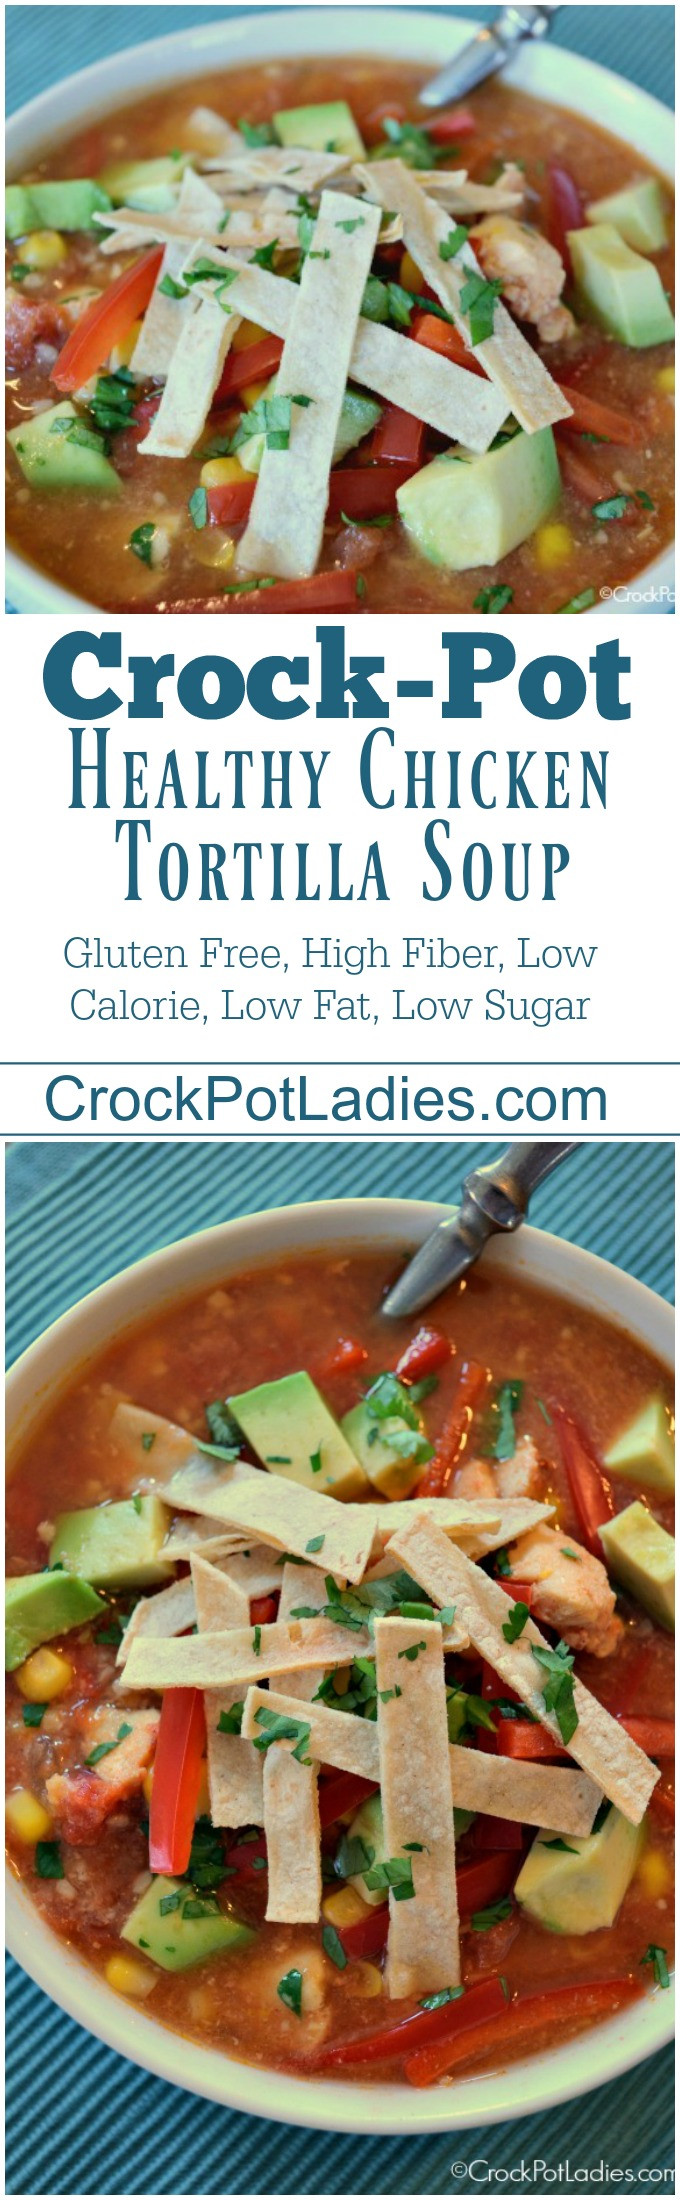 Low Calorie Chicken Tortilla Soup
 Crock Pot Healthy Chicken Tortilla Soup Crock Pot La s